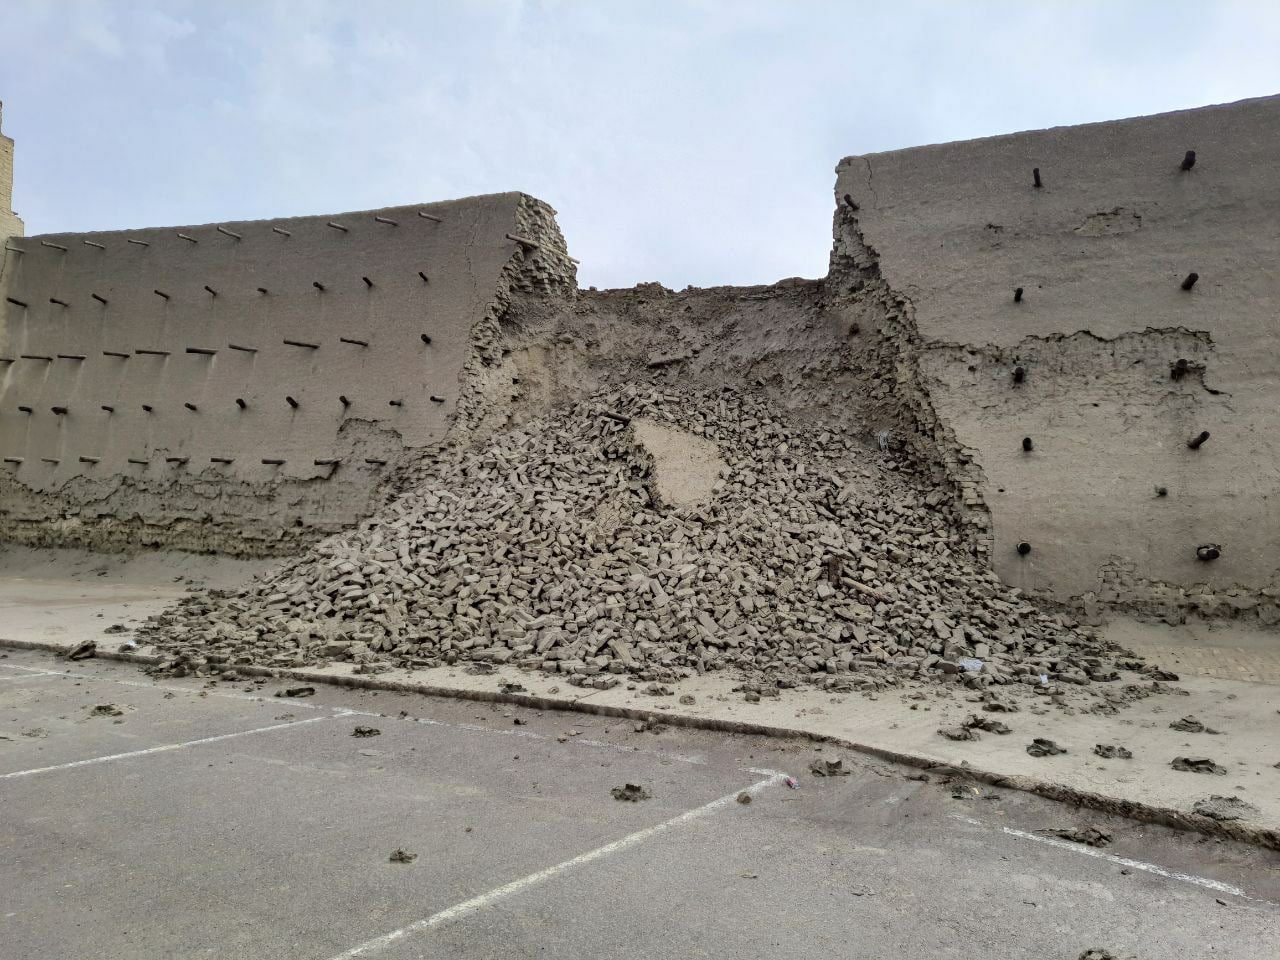 Названа стоимость реконструкции обрушившейся в Бухаре стены